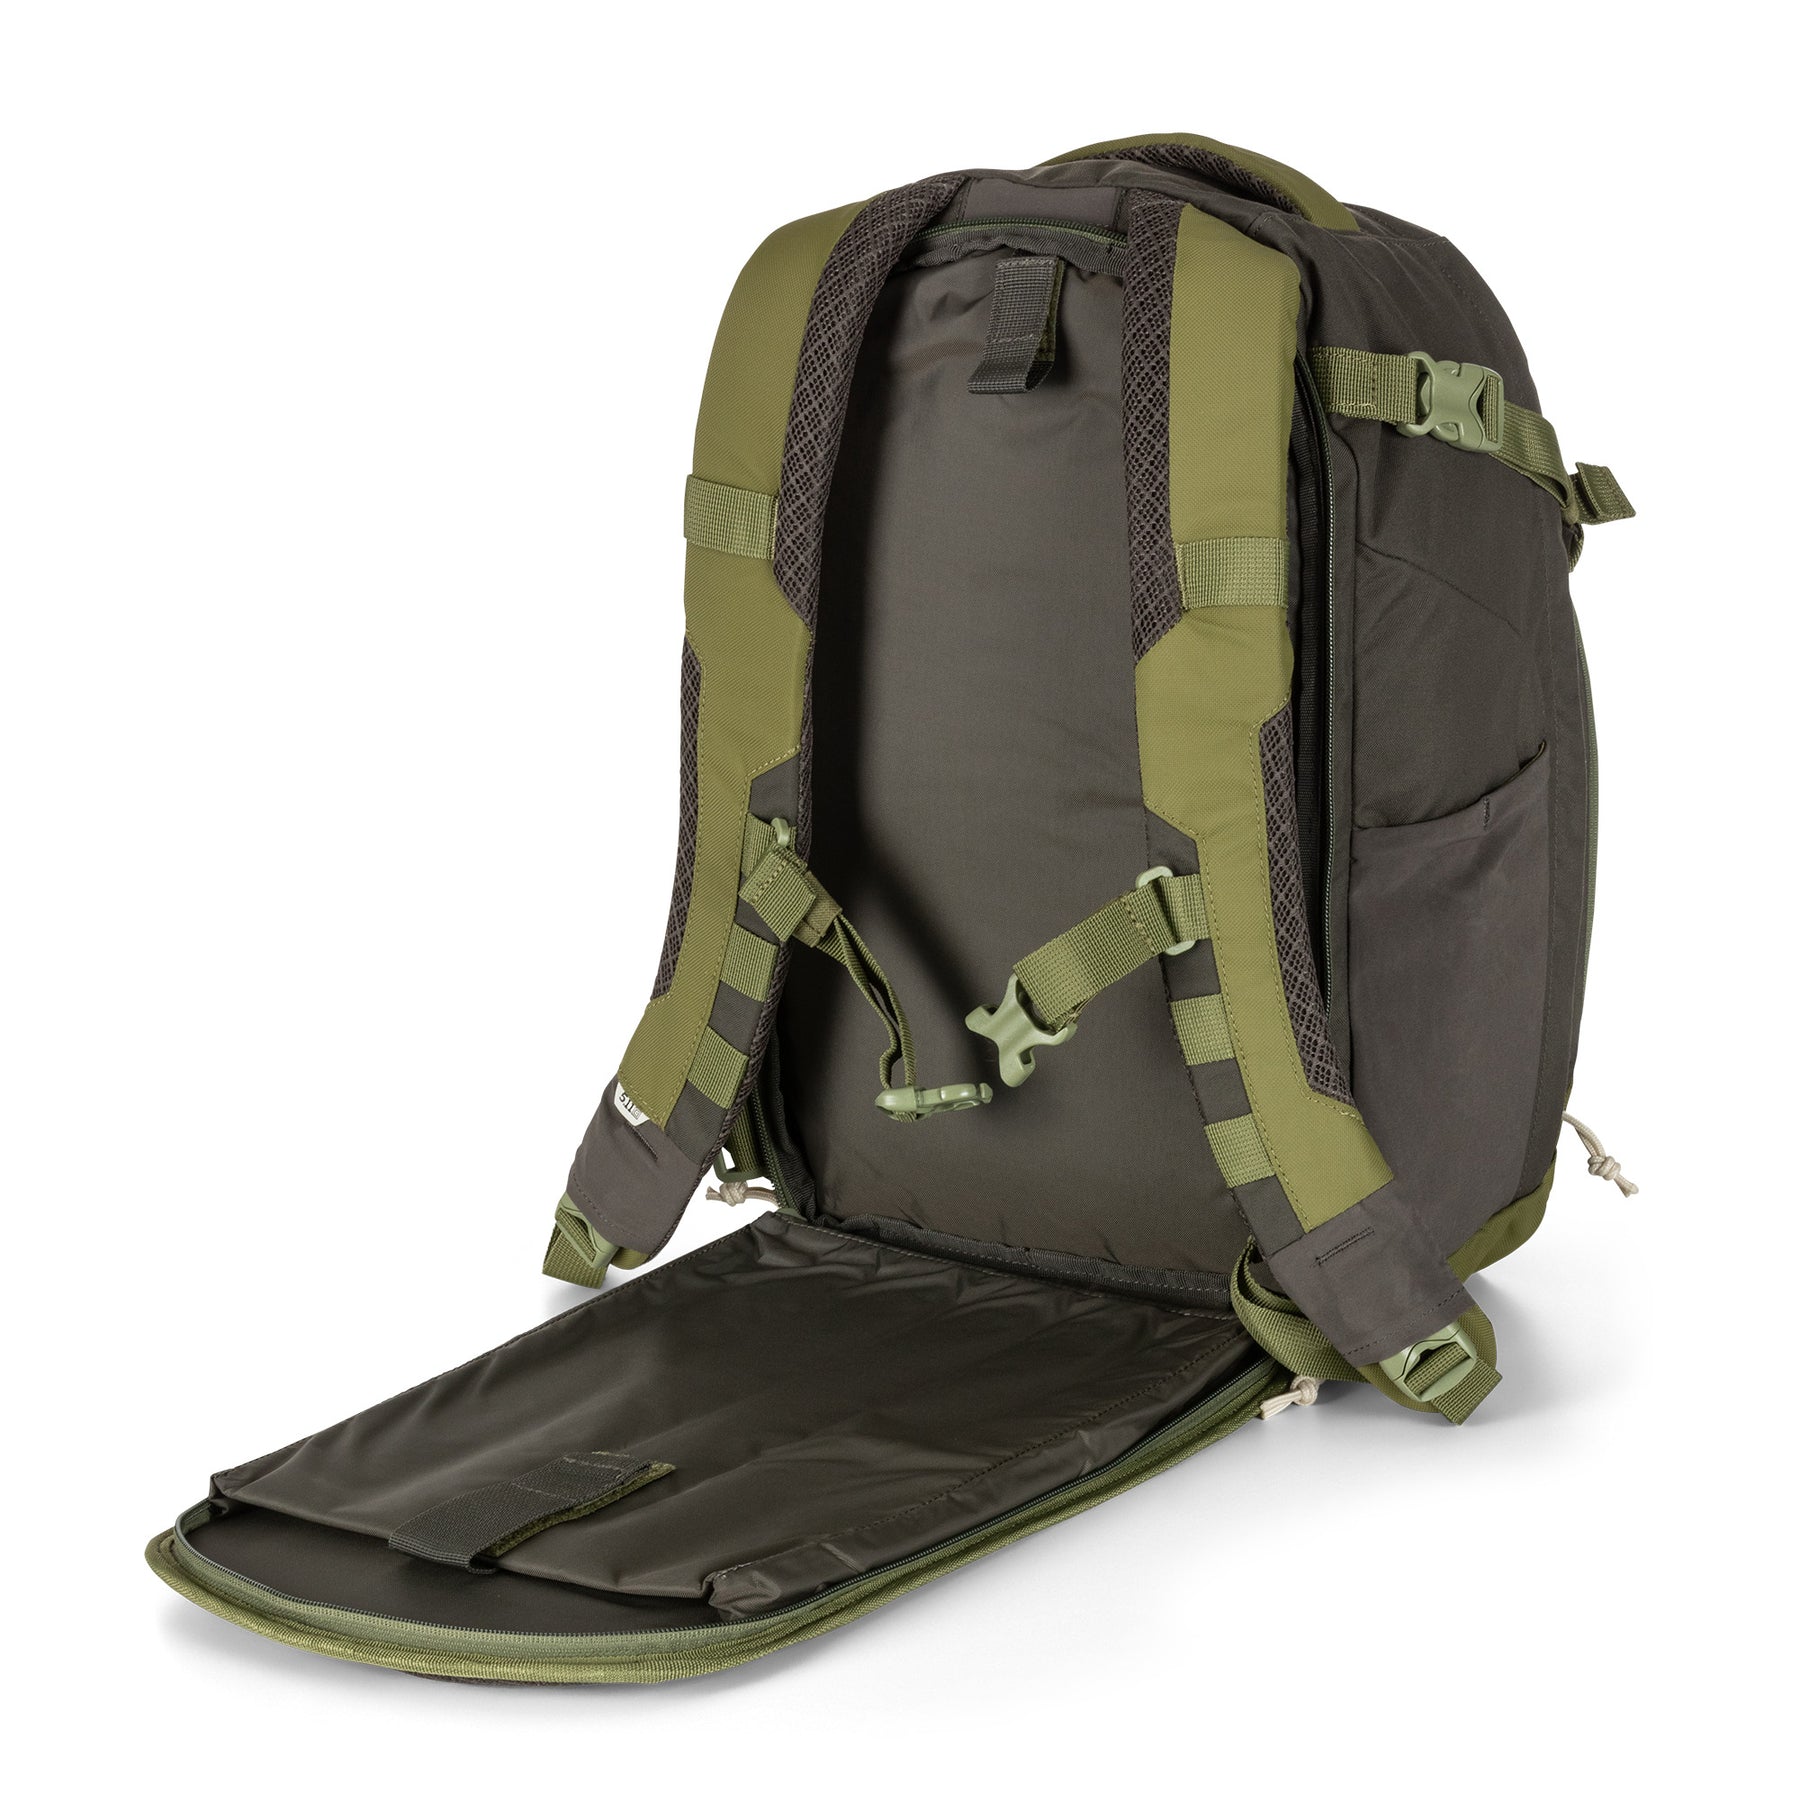 Zaino COVRT18 di 5.11 grenade (verde) - vista tasca posteriore per laptop e sacca idrica